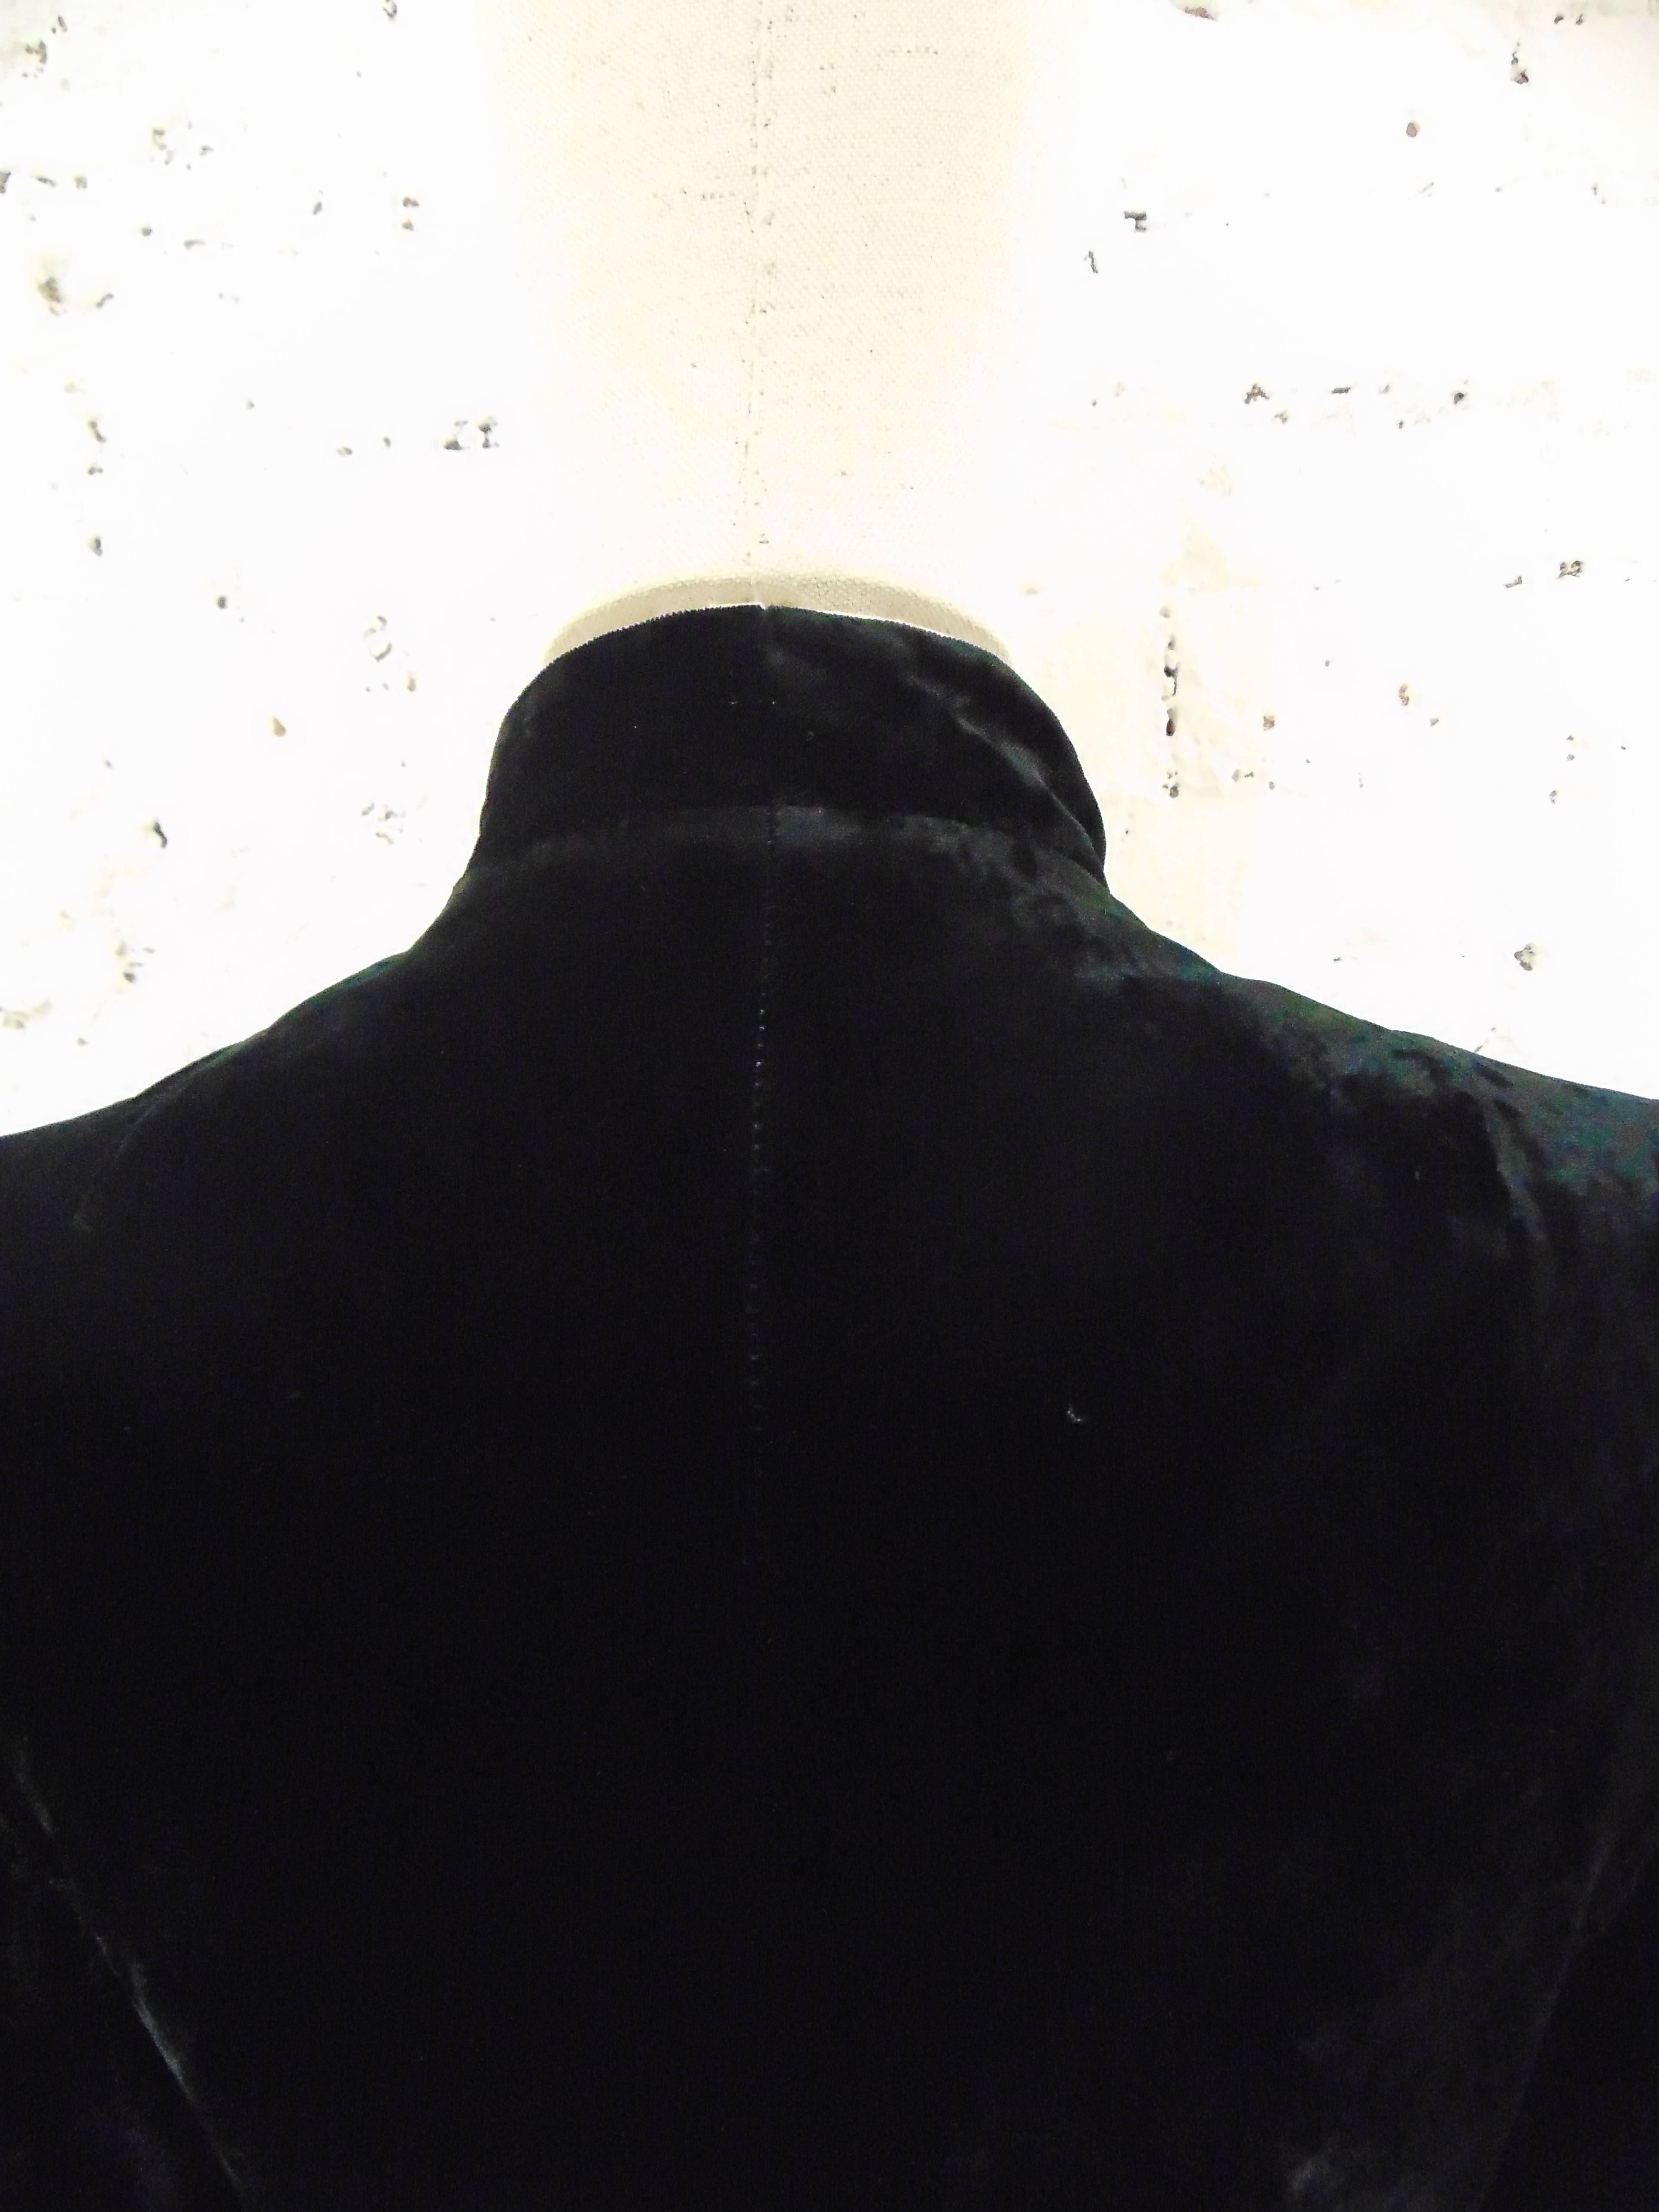 1980s Bonwit Teller black velvet coat

totally made in italy in size xs